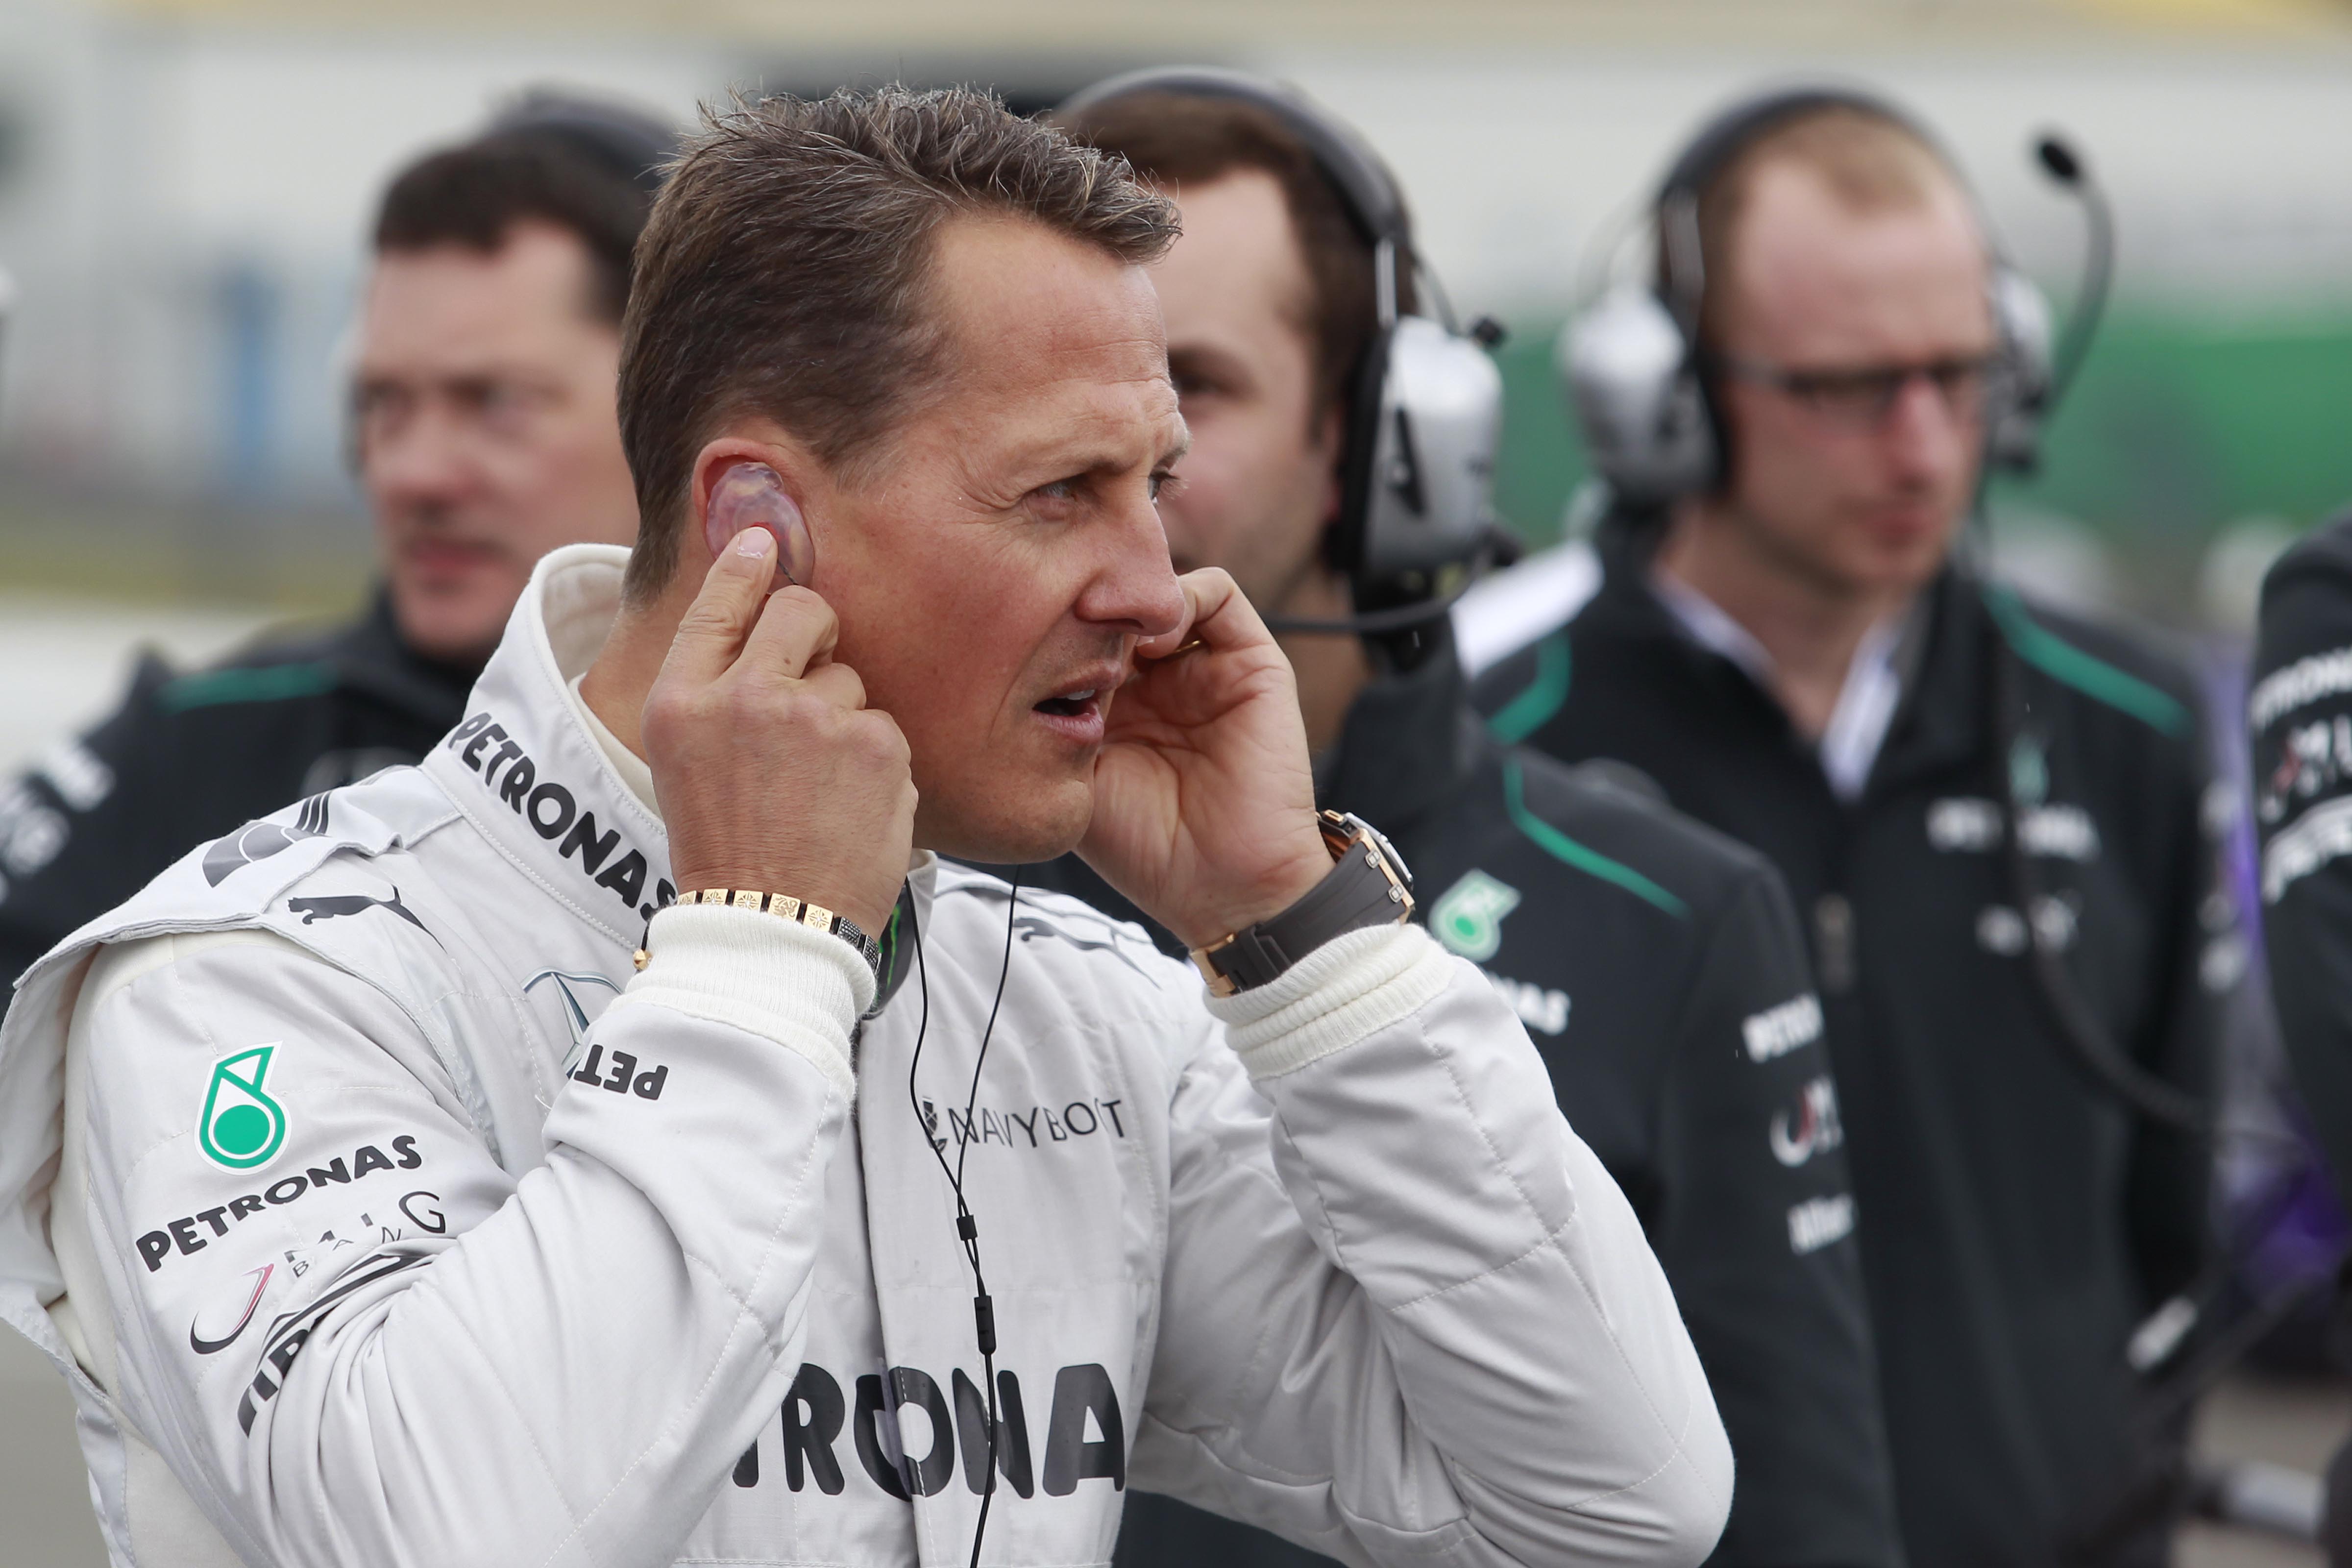 Schumacher had bij Lotus kunnen instappen